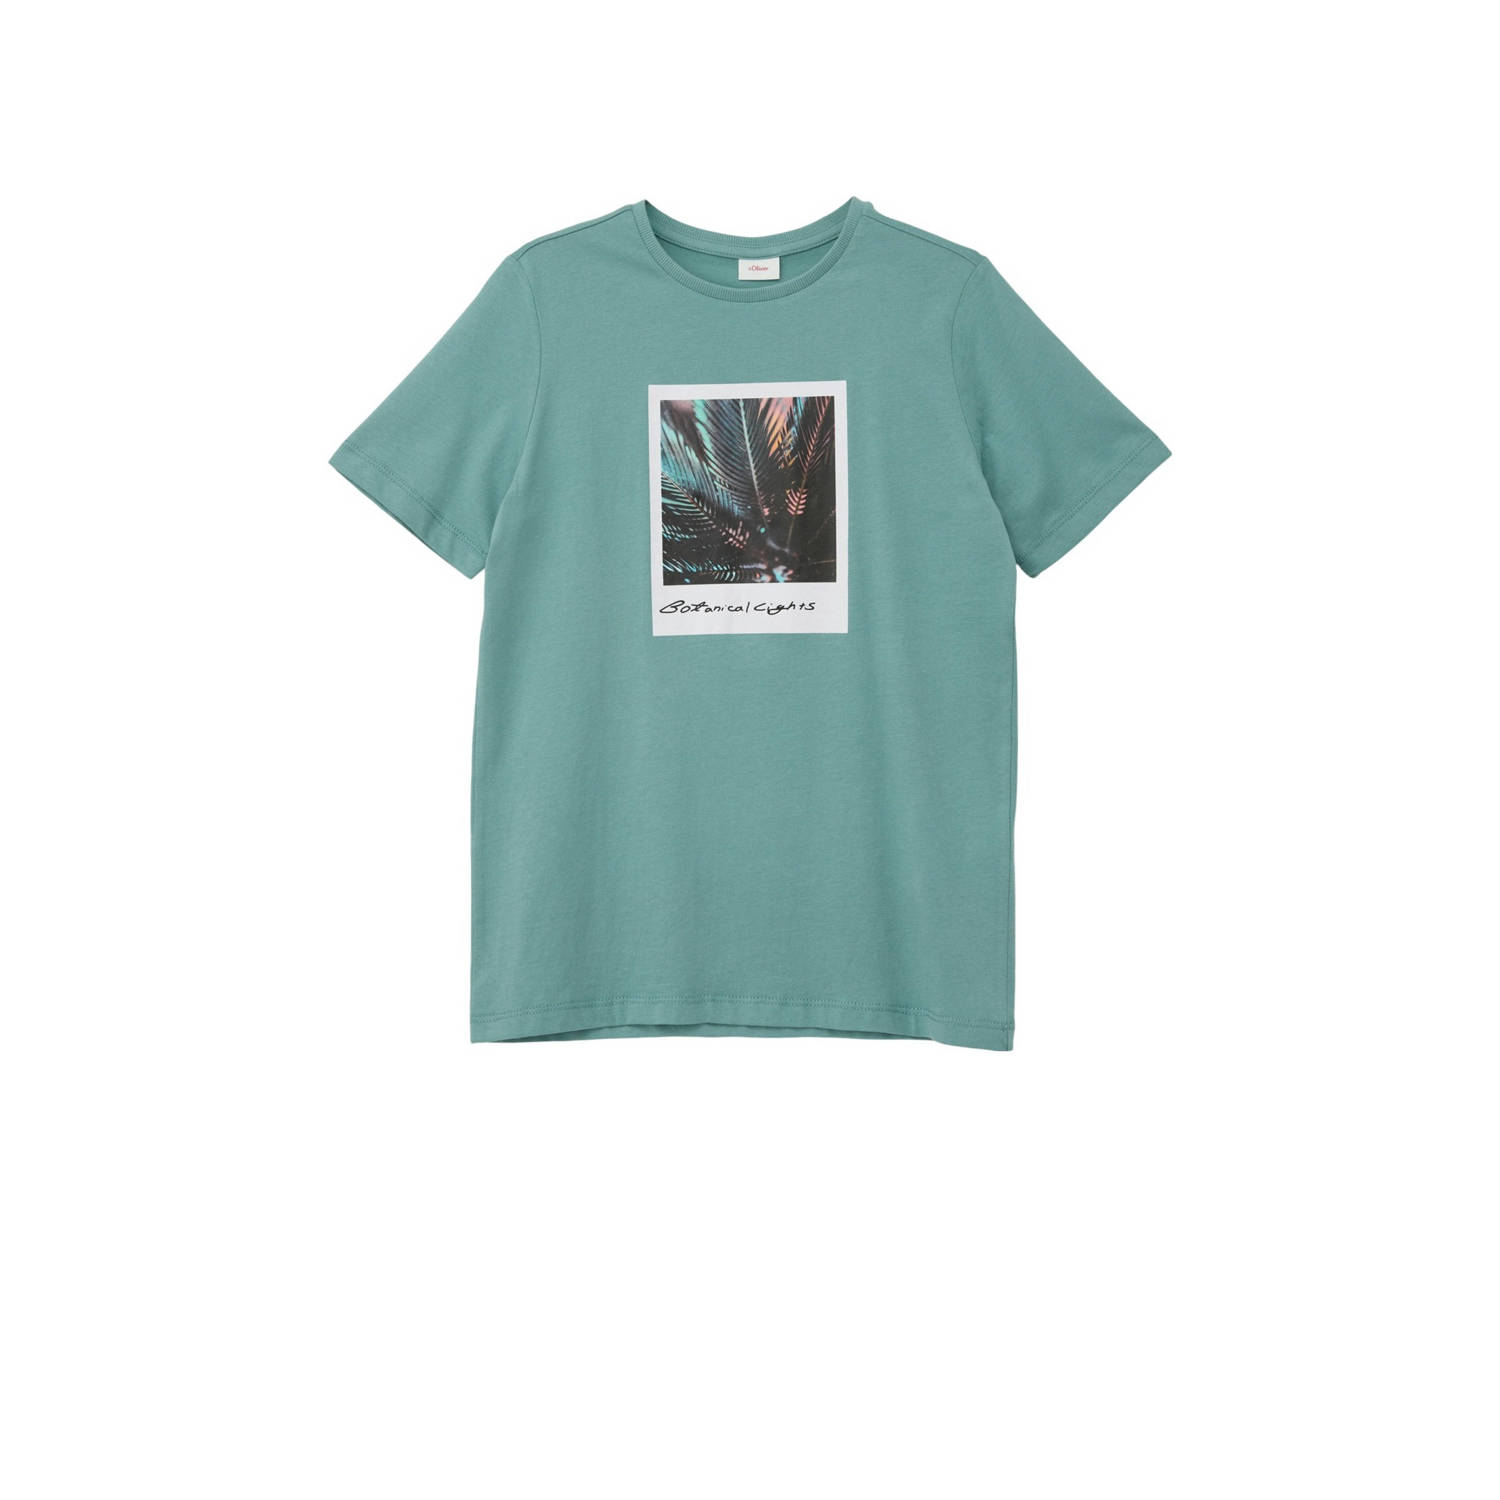 S.Oliver T-shirt met printopdruk petrol Blauw Jongens Katoen Ronde hals 140